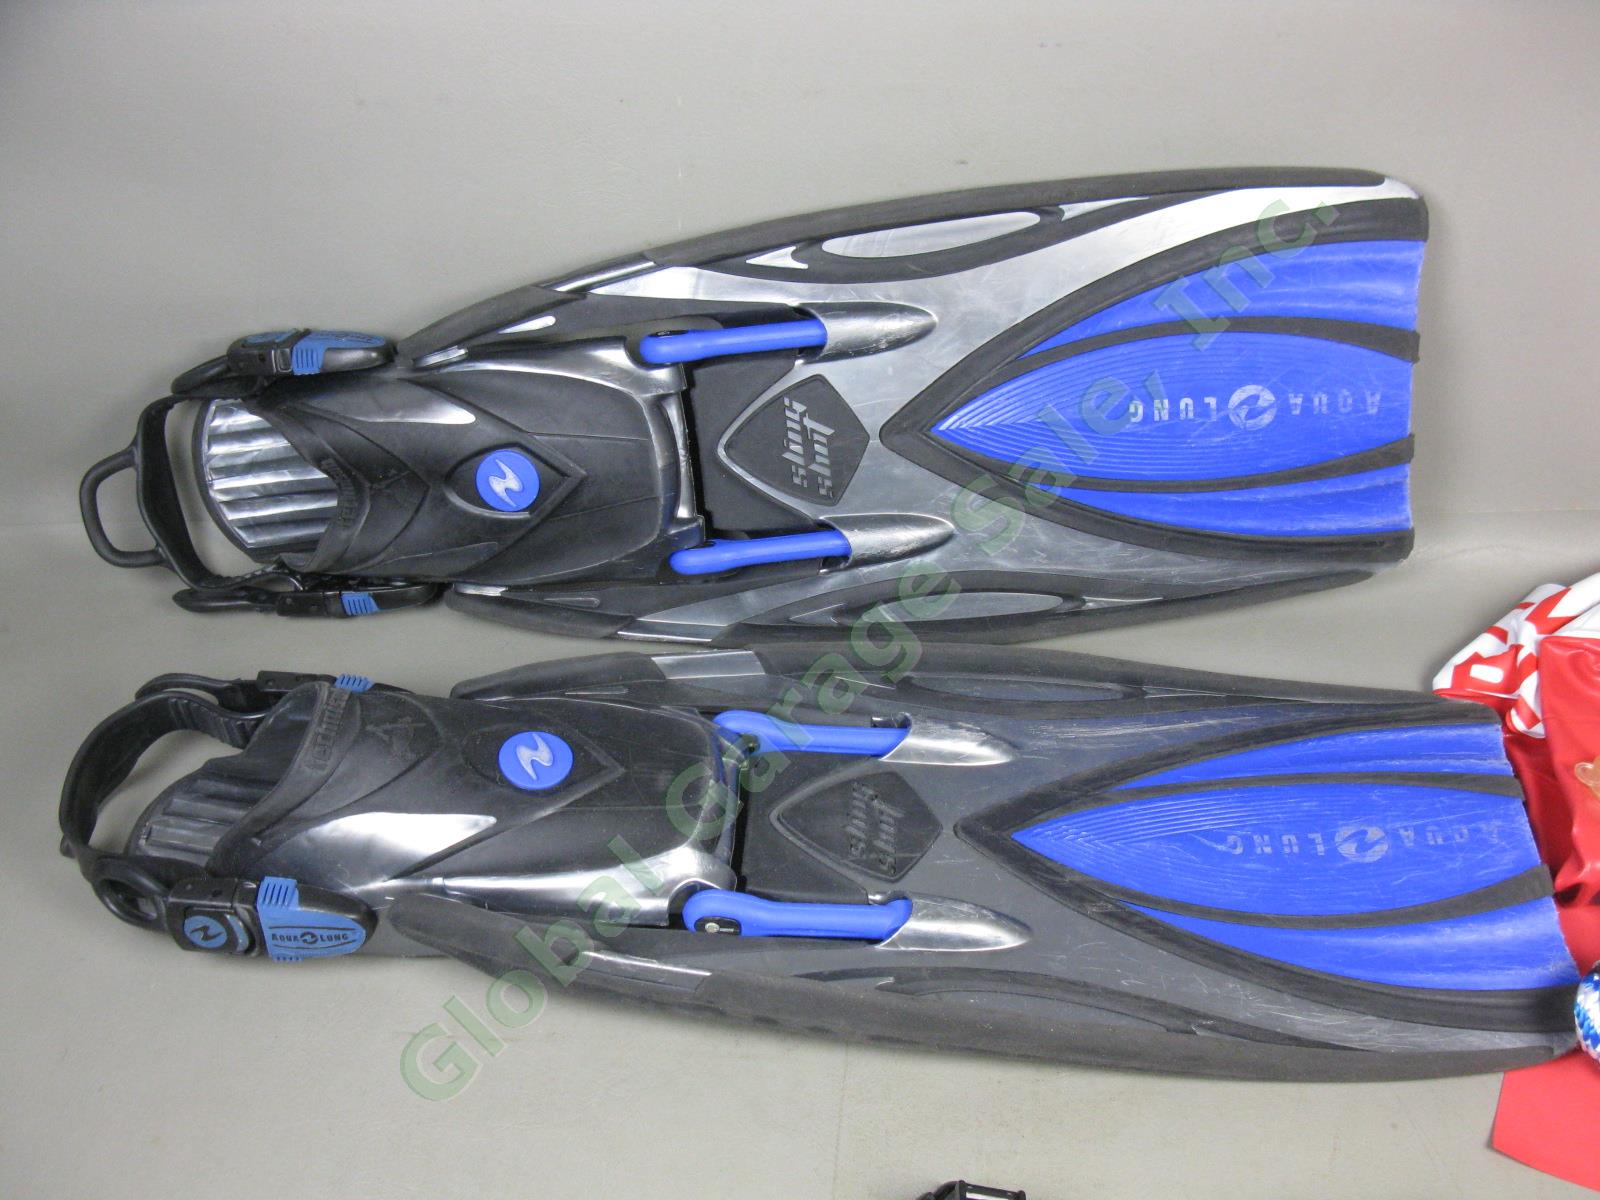 SCUBA Gear Lot AquaLung Slingshot Dive Fins Scubapro Mask Snorkel Tabata Knife + 3